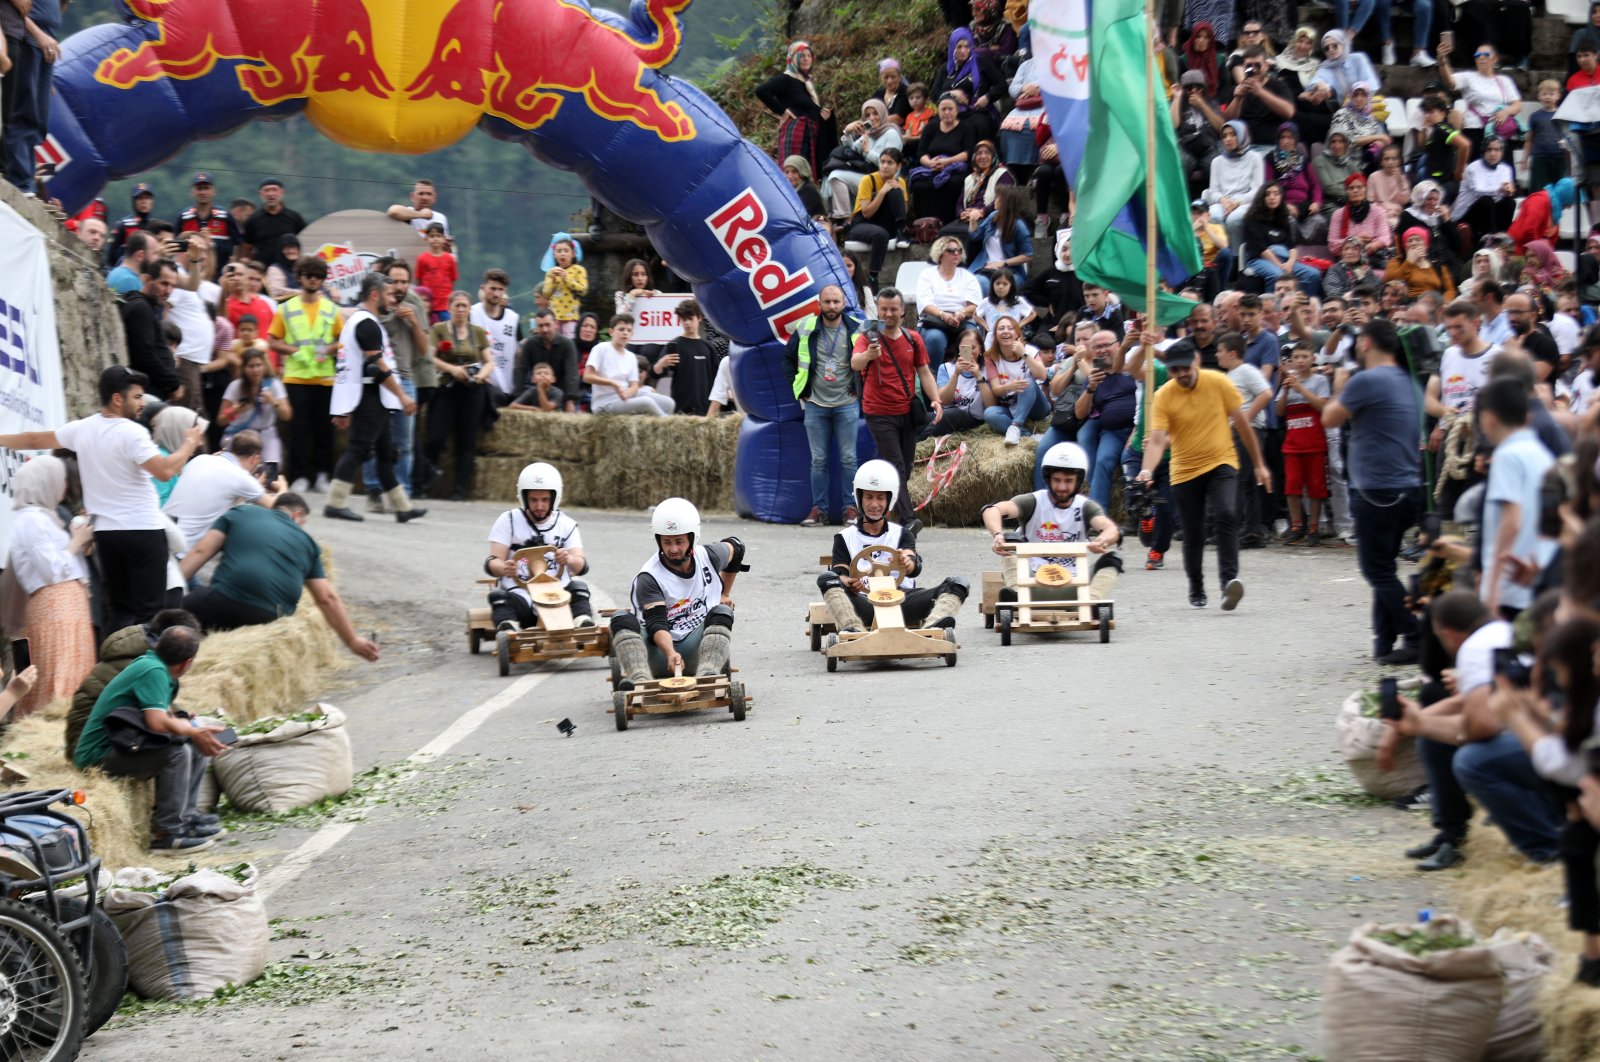 Festival Mobil Kayu Formulaz Tradisional ke-13 diadakan di Rize